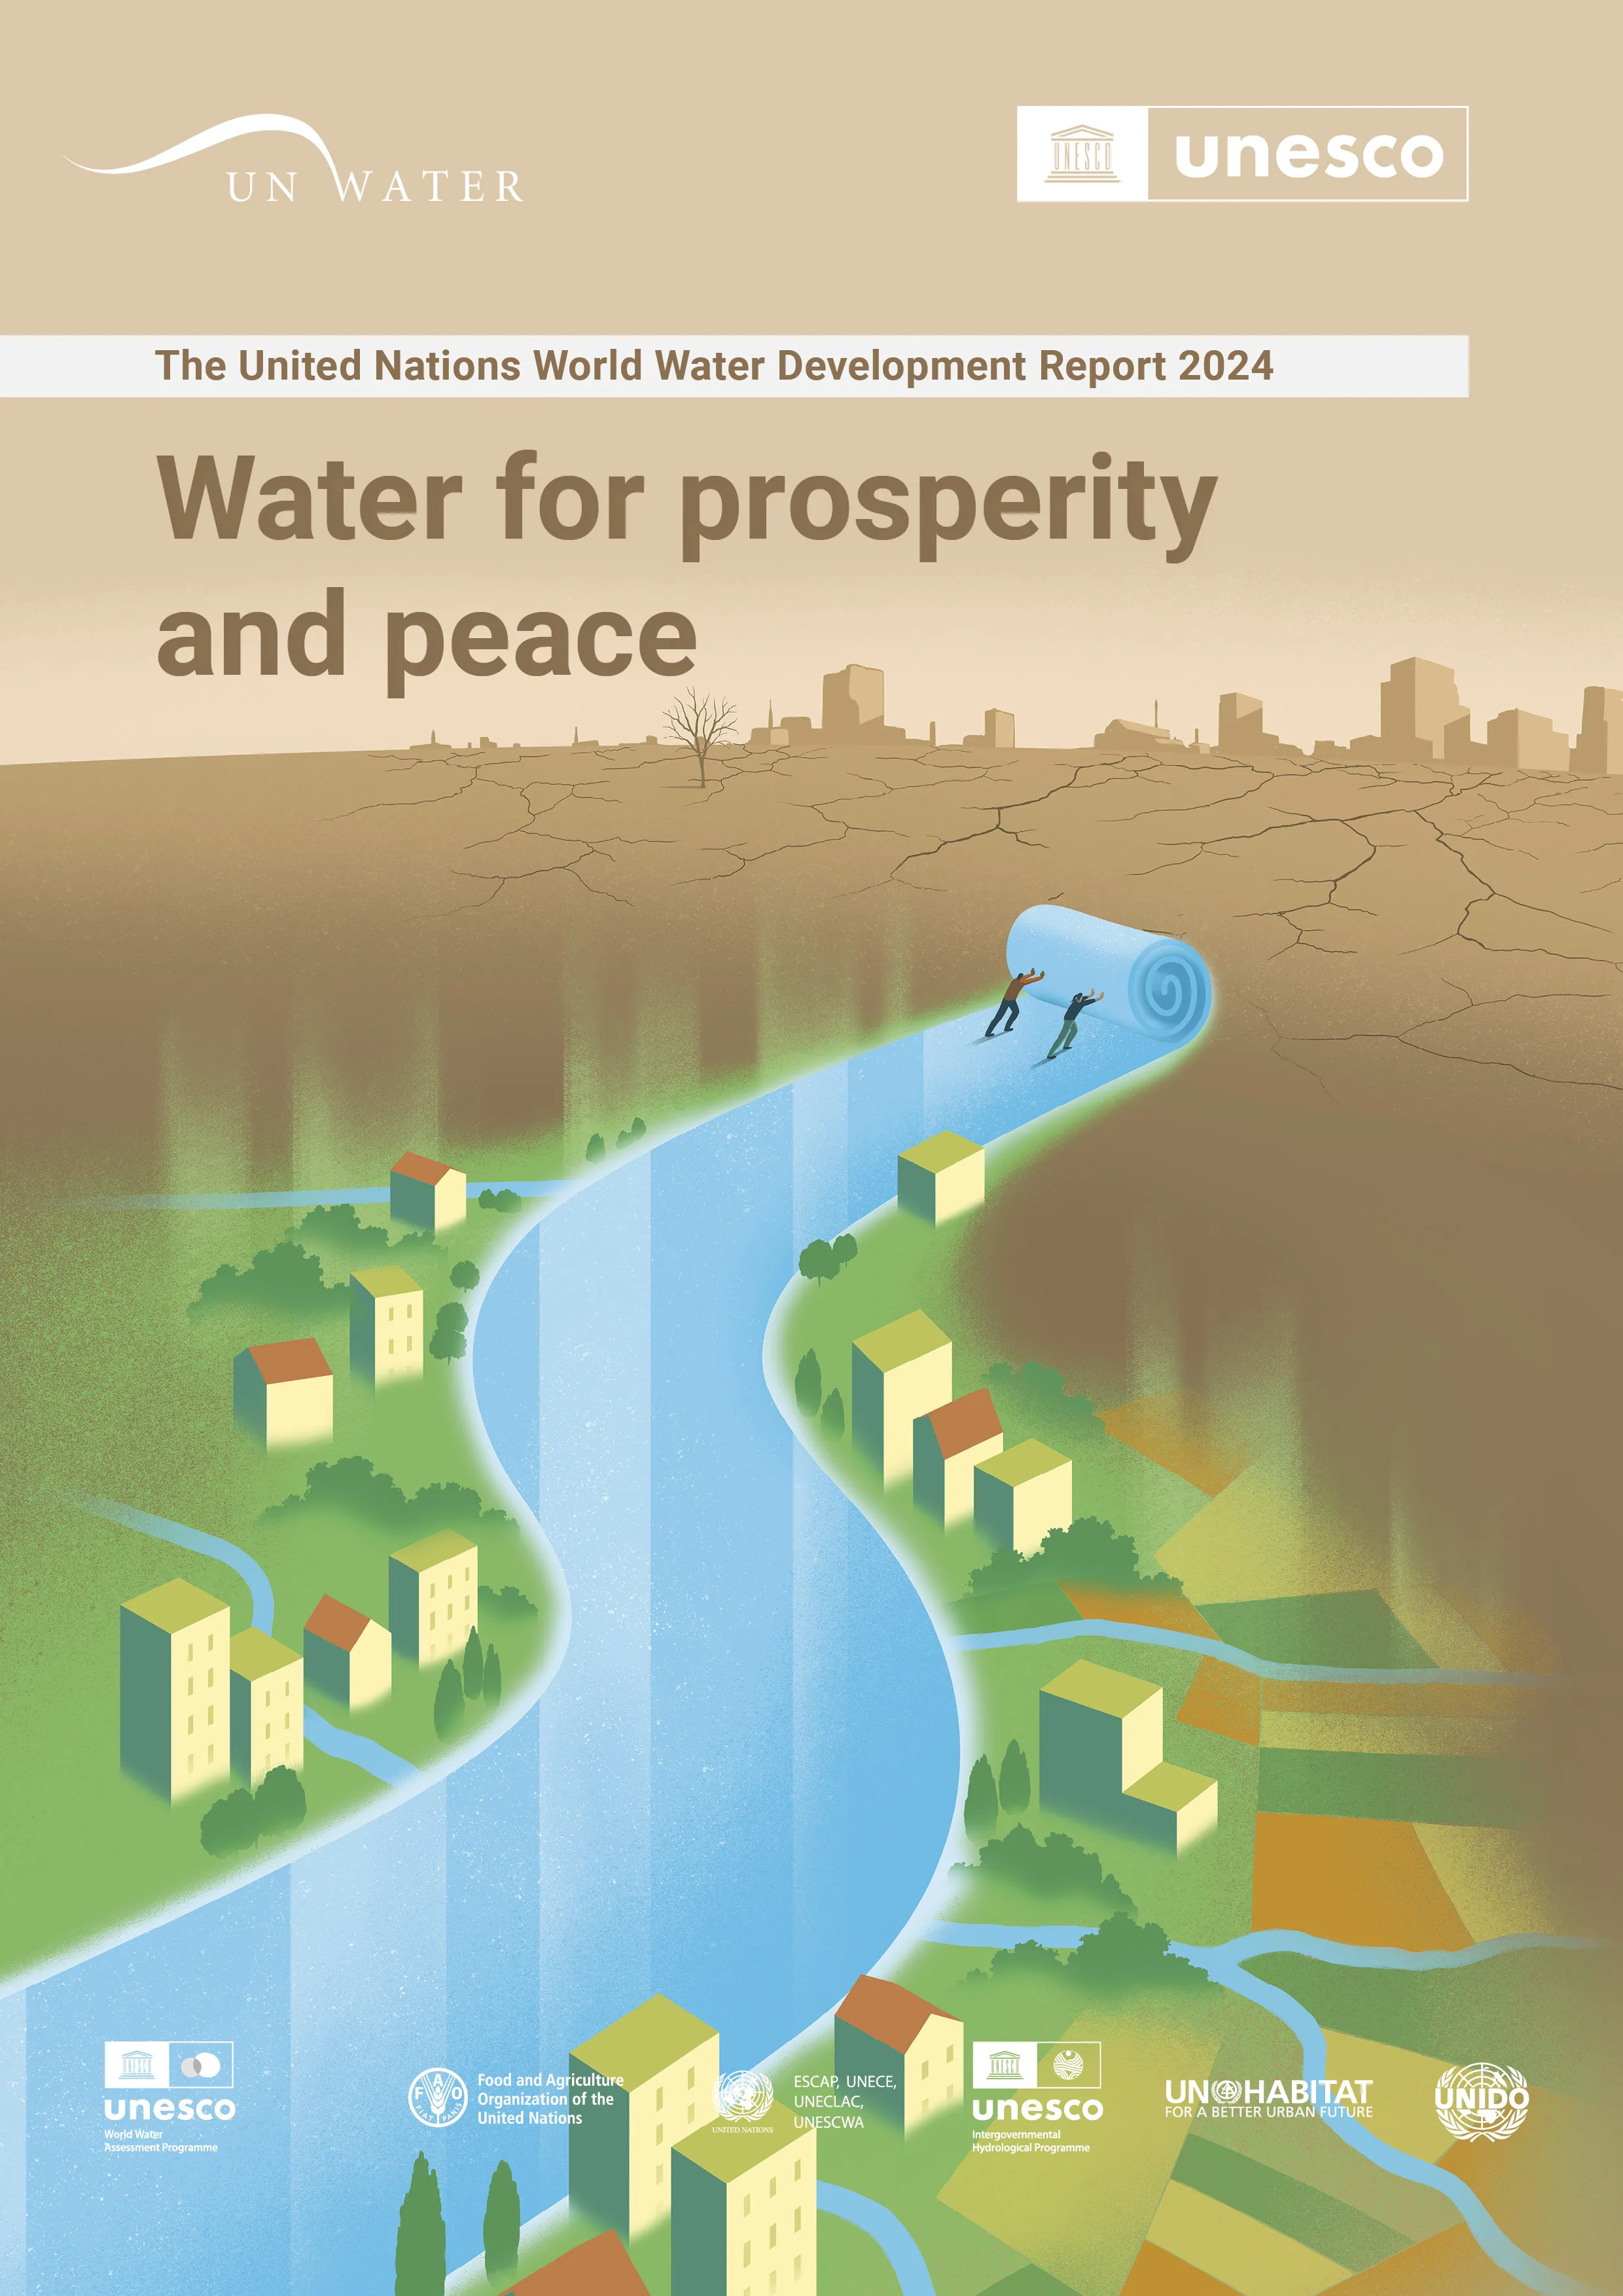 聯合國公布《聯合國世界水資源開發報告》。翻攝自UNESCO官方《推特》